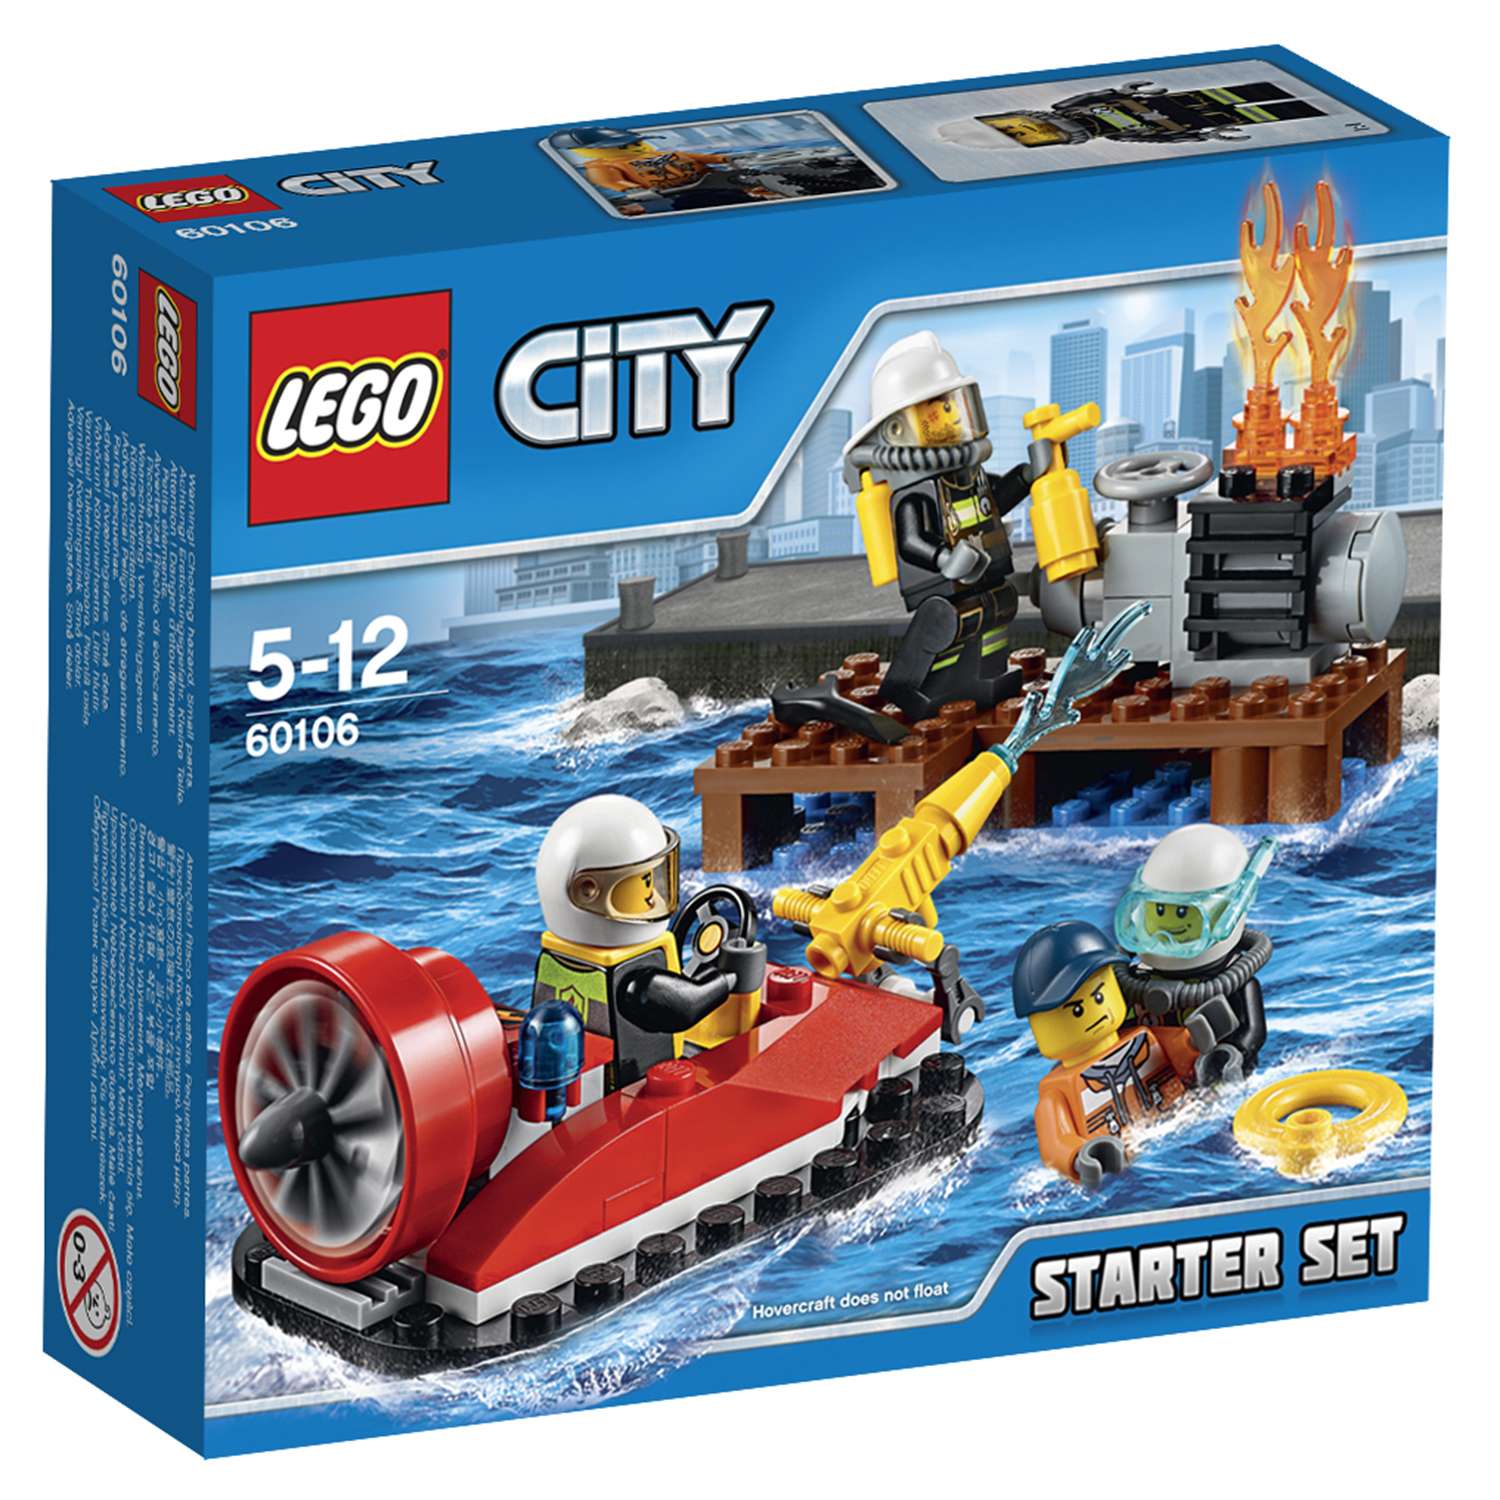 Конструктор LEGO City Fire Набор для начинающих «Пожарная охрана» (60106) - фото 2